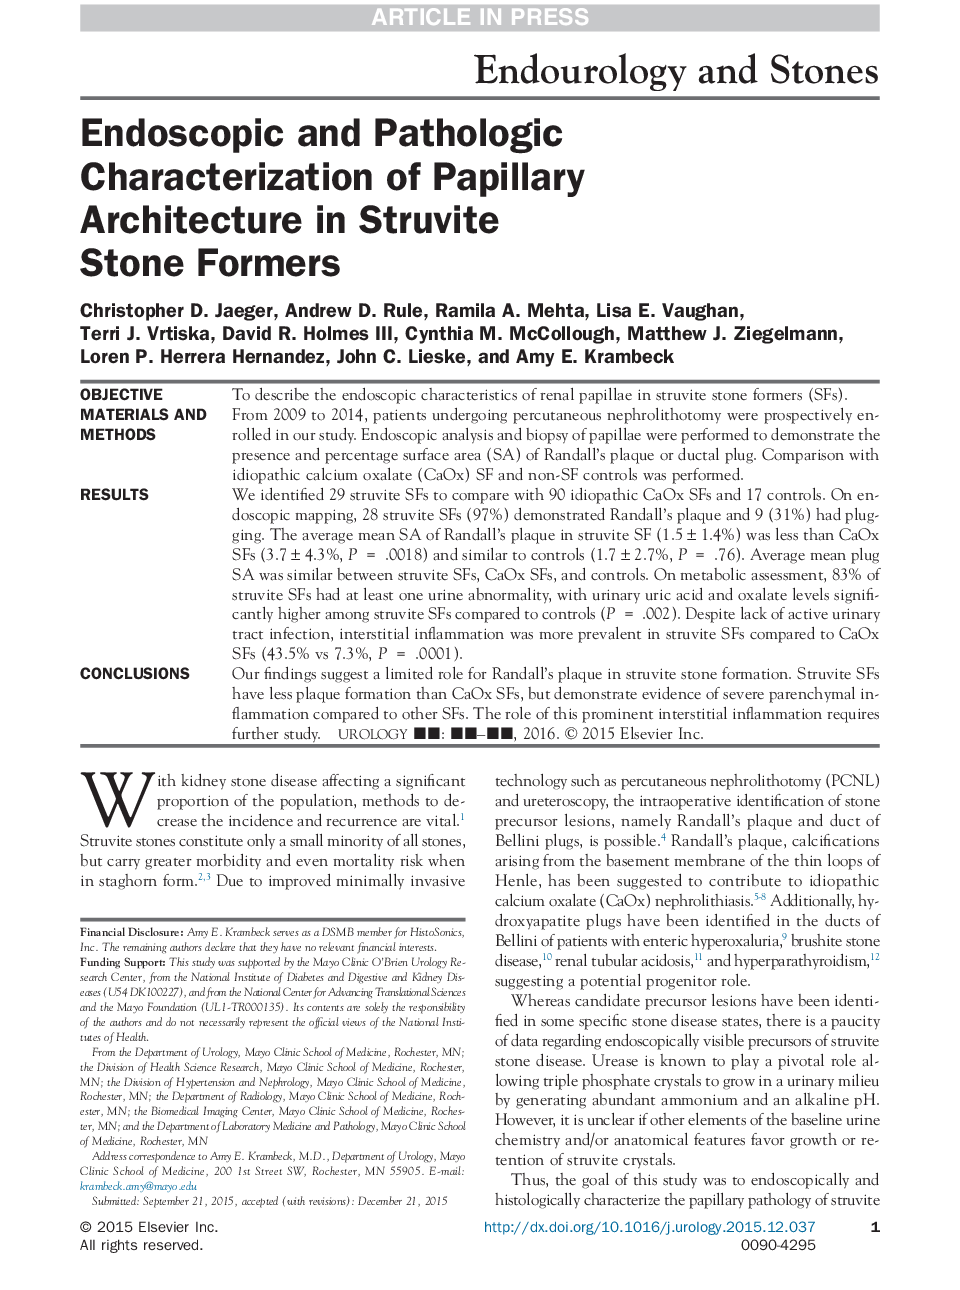 تشخیص آندوسکوپی و آسیب شناختی معماری پاپیلاری در فرمول های سنگی استروویوت 